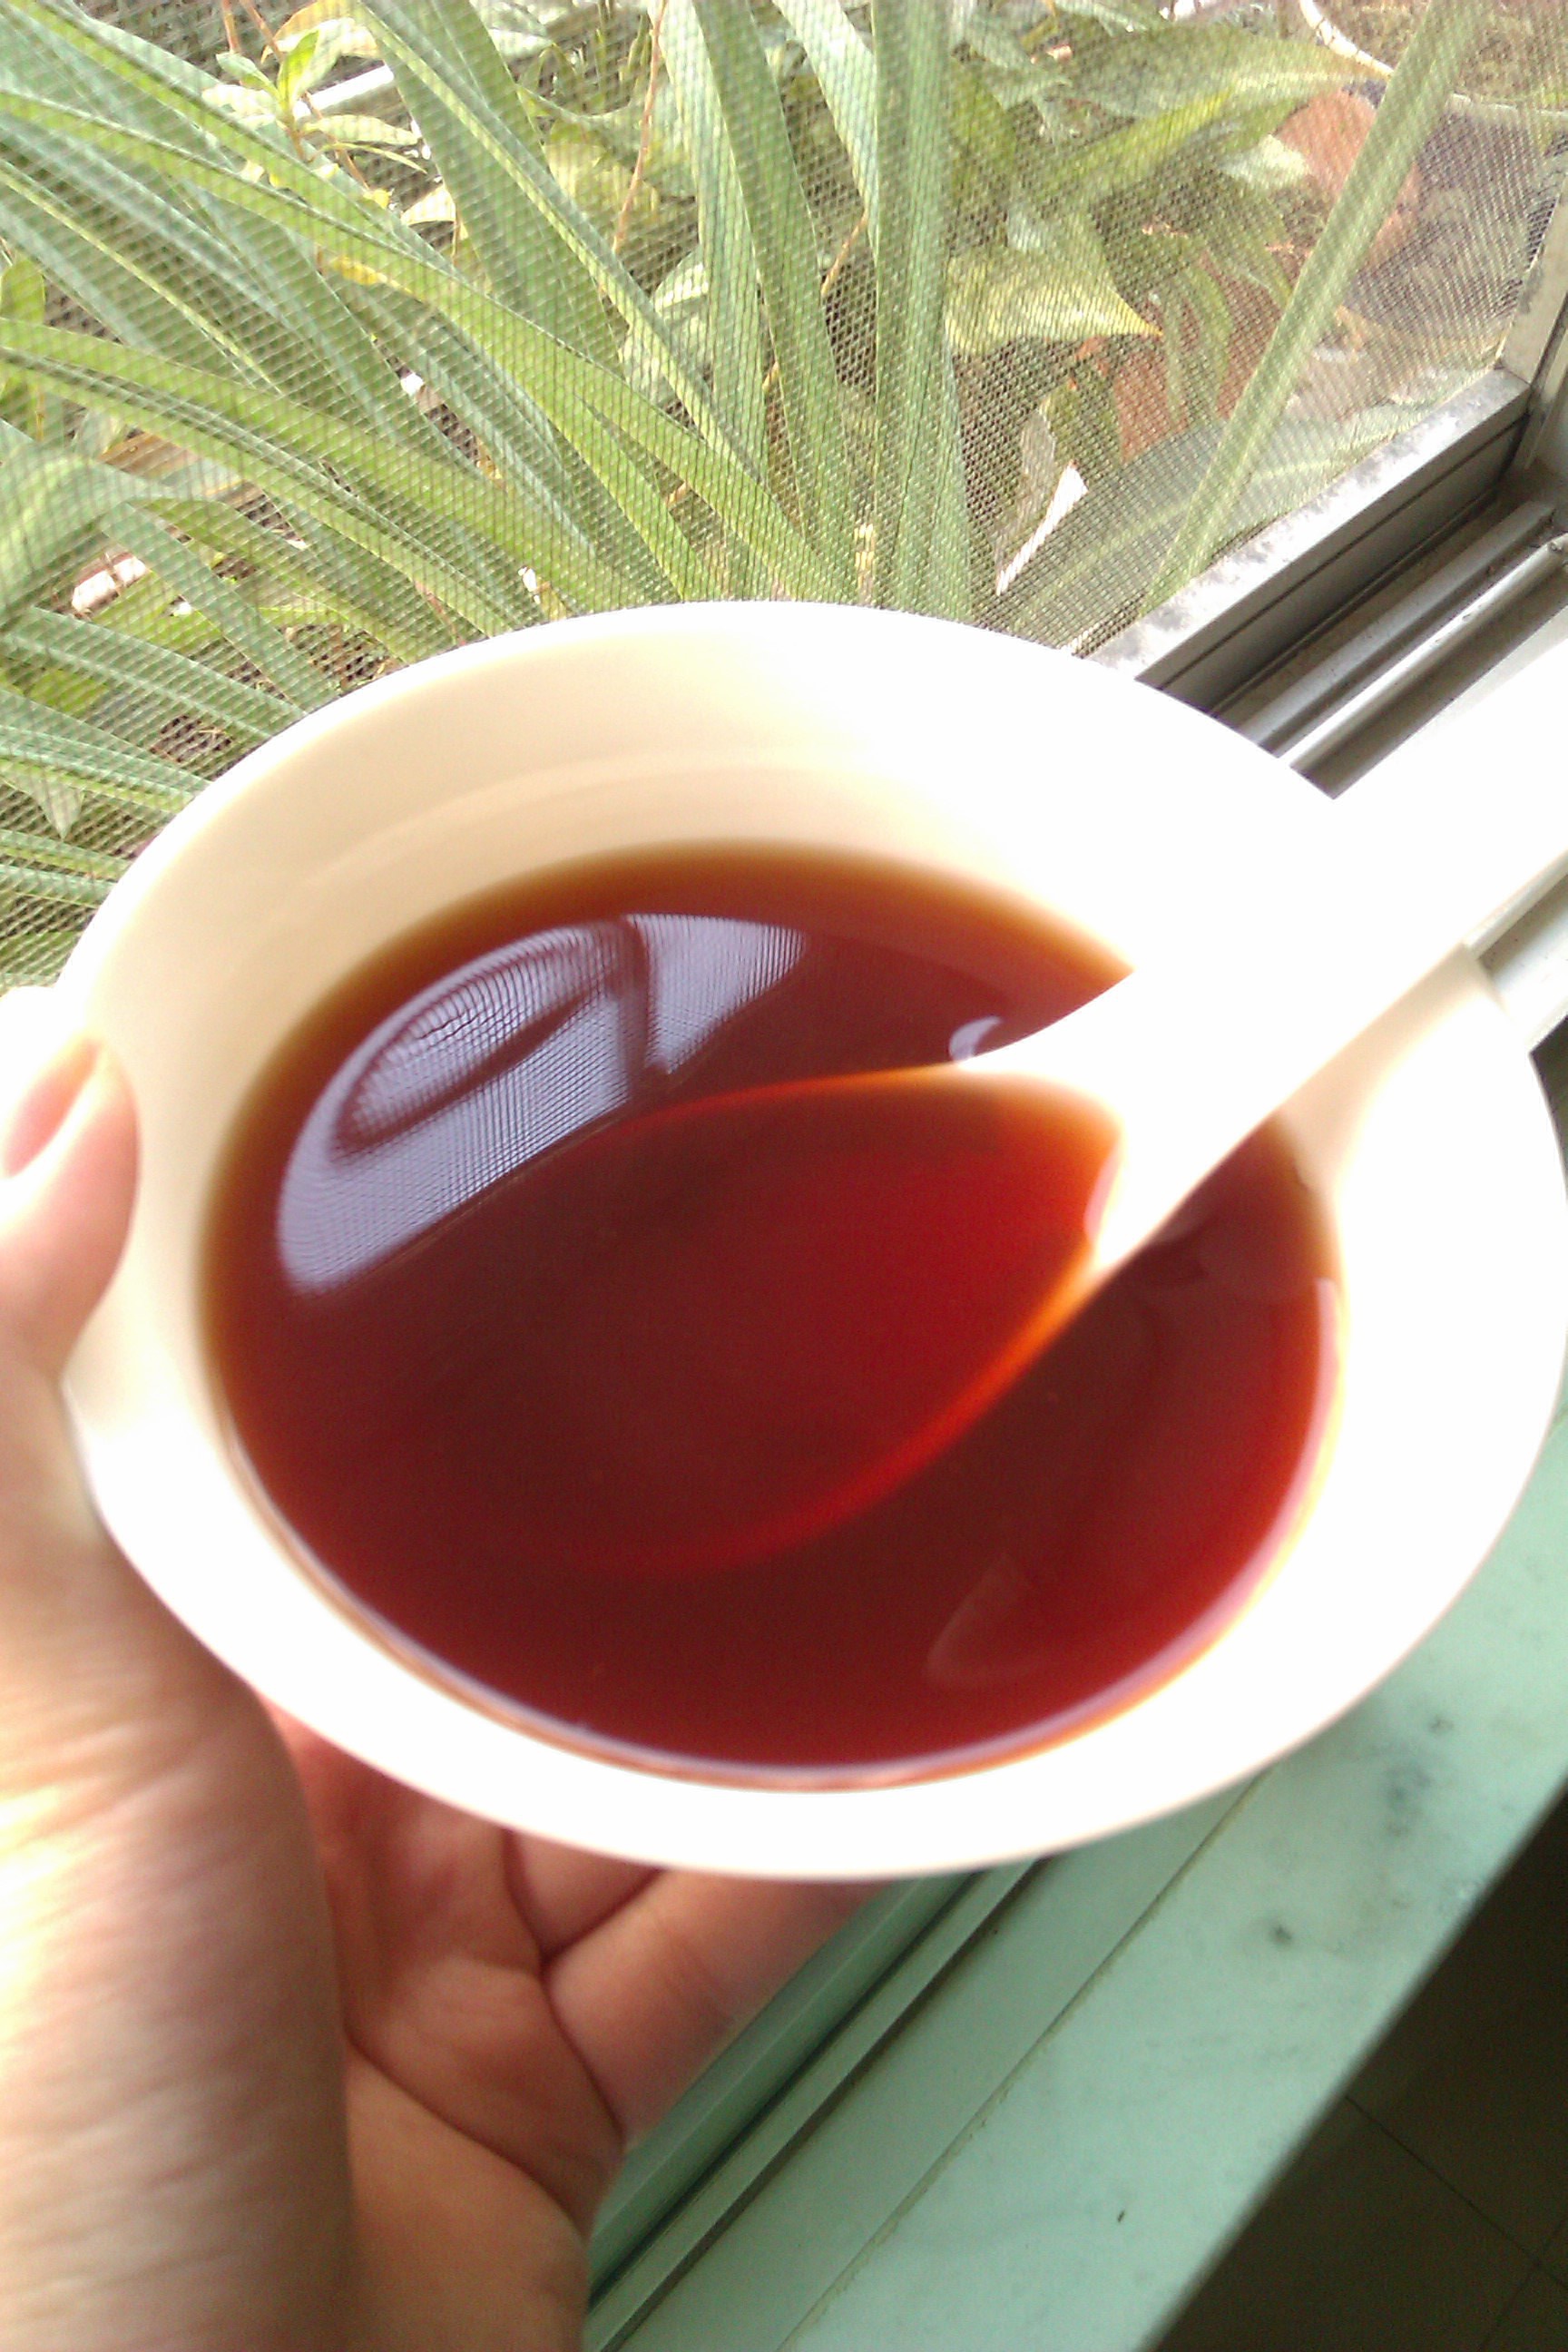 罗汉果柿饼茶和罗汉果草茶